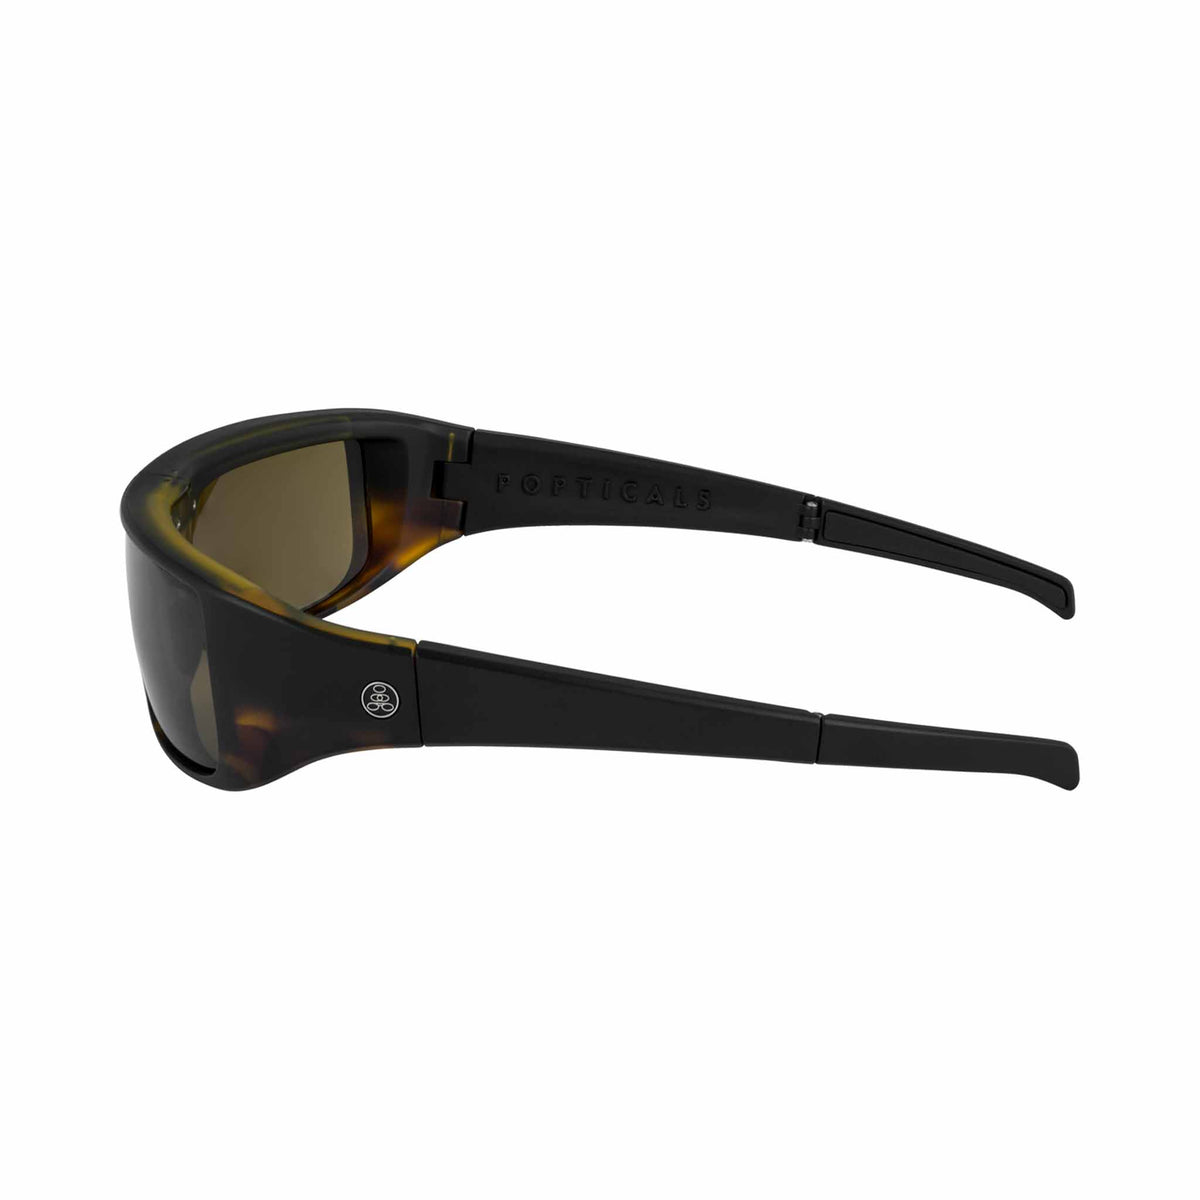 Popticals, Premium Compact Sunglasses, PopGear, 010050-AUNS, Standard Sunglasses, Matte Black Tortoise, Brown Lenses, Side View